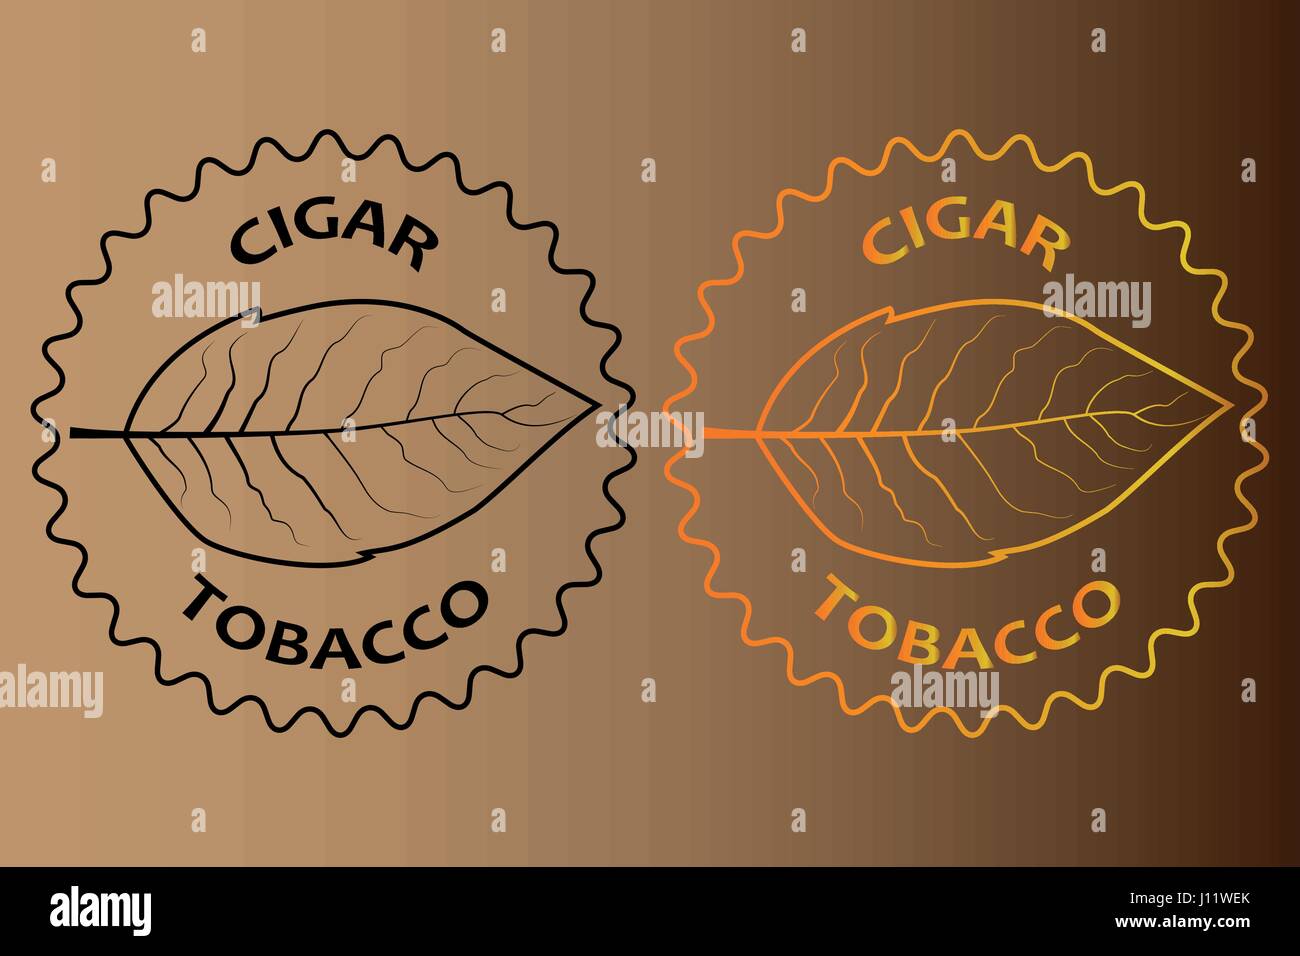 Il tabacco sigaro adesivo - illustrazione vettoriale Illustrazione Vettoriale